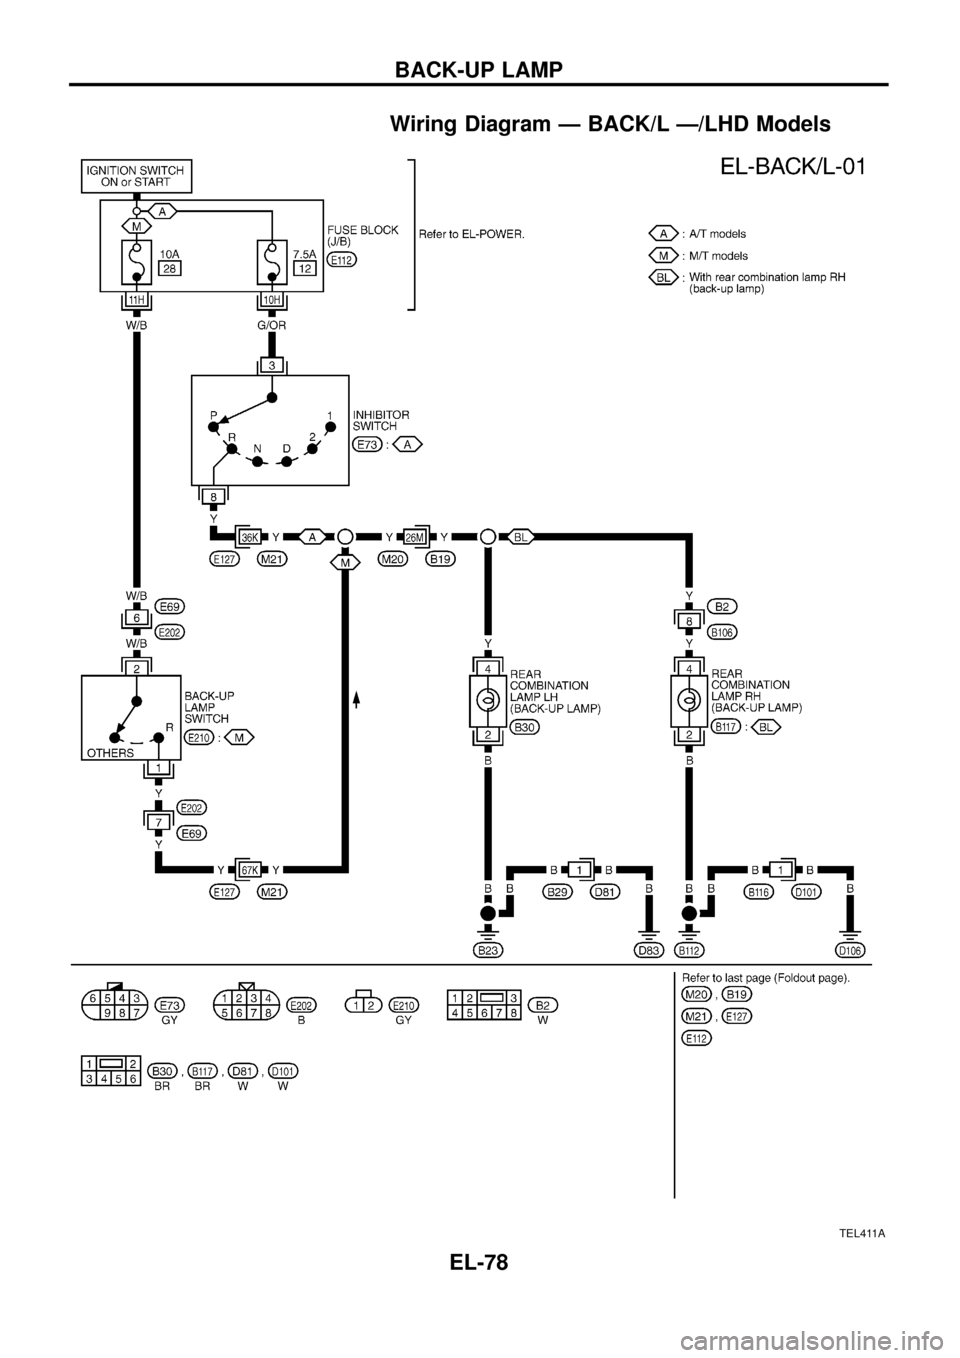 NISSAN PATROL 1998 Y61 / 5.G Electrical System Manual Online Wiring Diagram Ð BACK/L Ð/LHD Models
TEL411A
BACK-UP LAMP
EL-78 